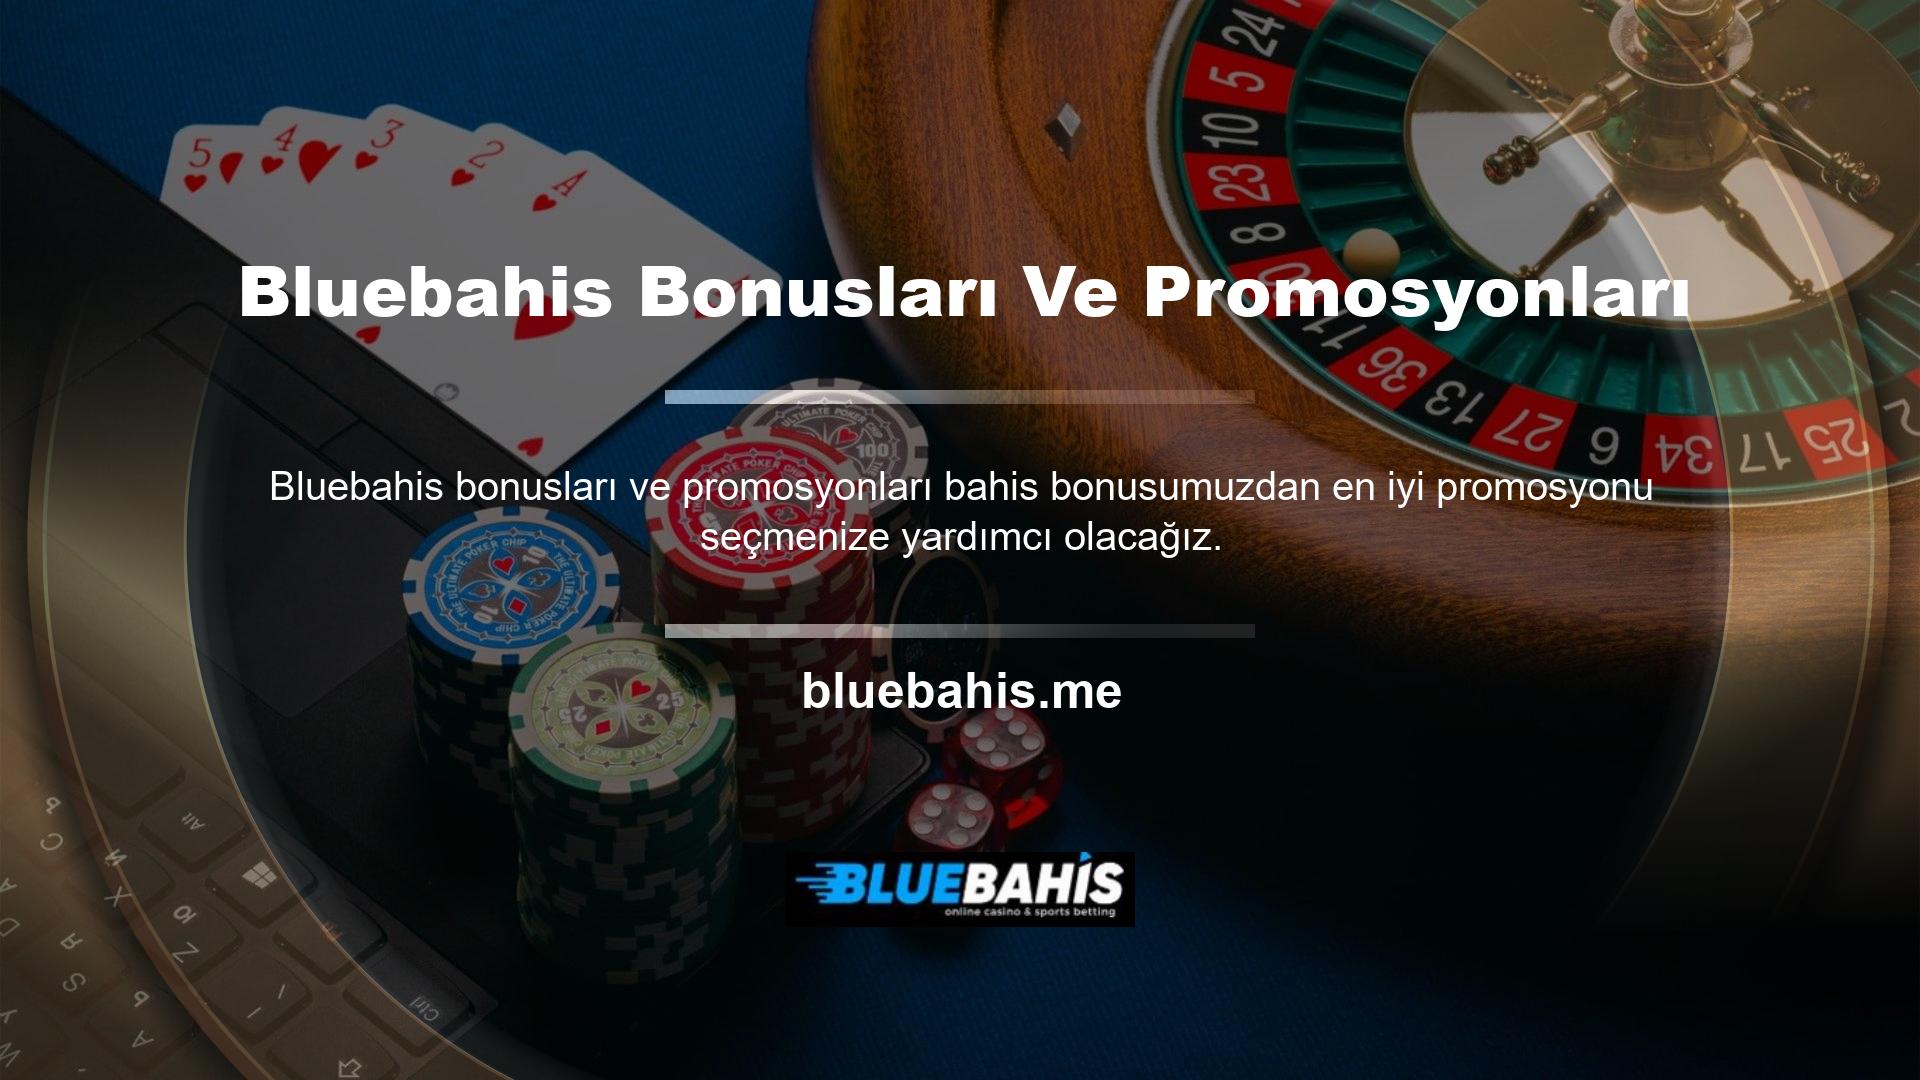 Bluebahis bonusları ve promosyonları hakkında daha fazla bilgi için web sitesinin promosyonlar sayfasını ziyaret edin